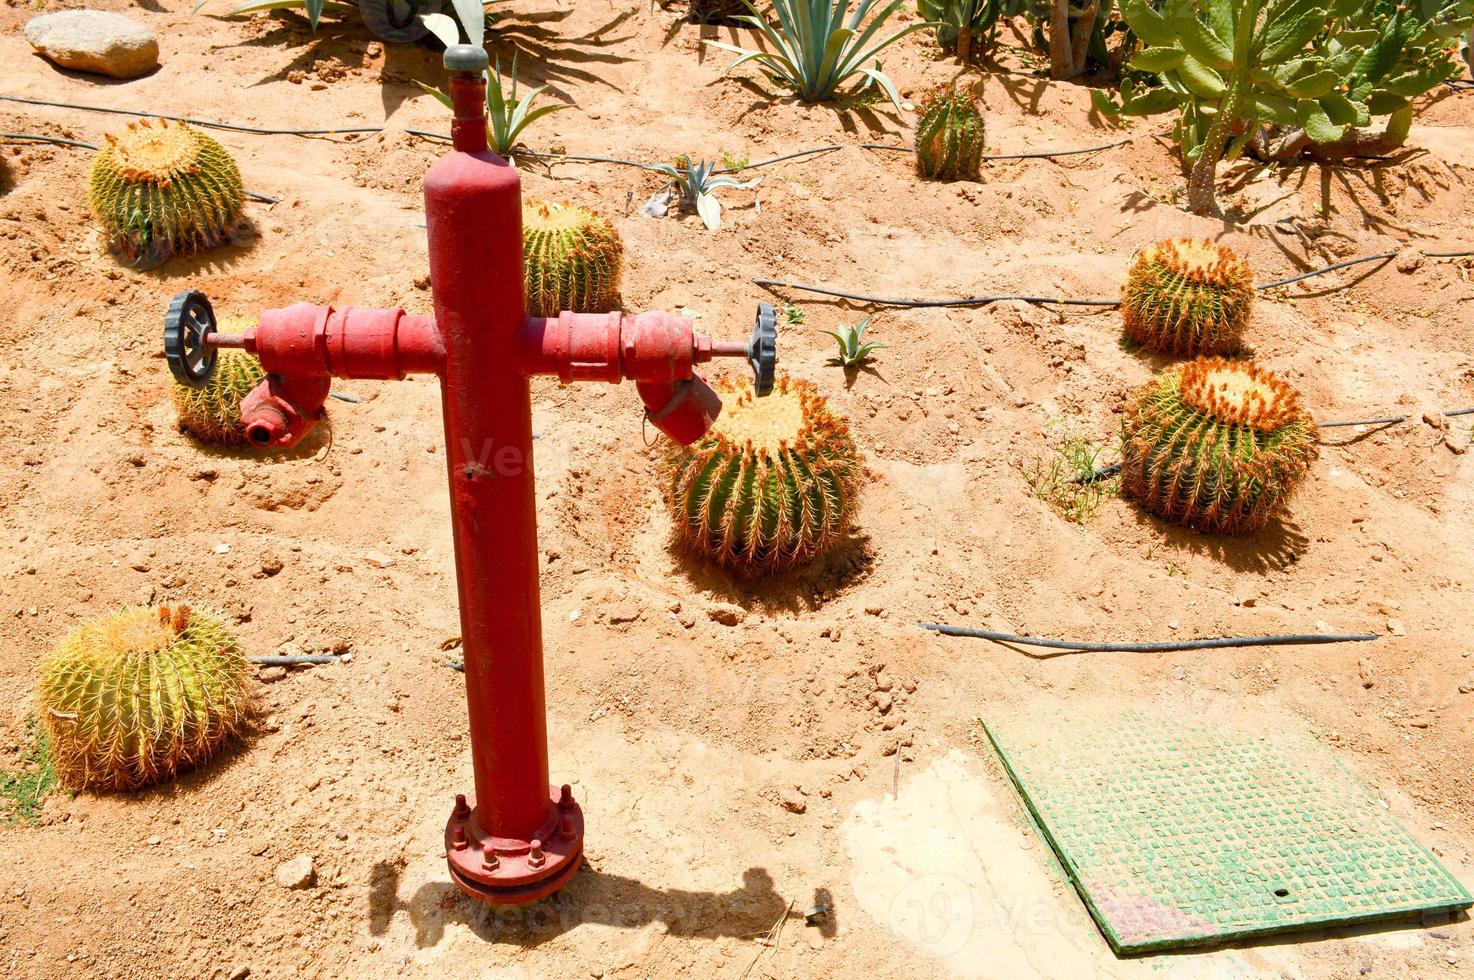 rood brand hydrant, een kraan voor water levering gieter droog planten in de woestijn met Mexicaans doornig scherp vers cactus met stekels Aan de zand. concept bestrijden droogte. de achtergrond foto